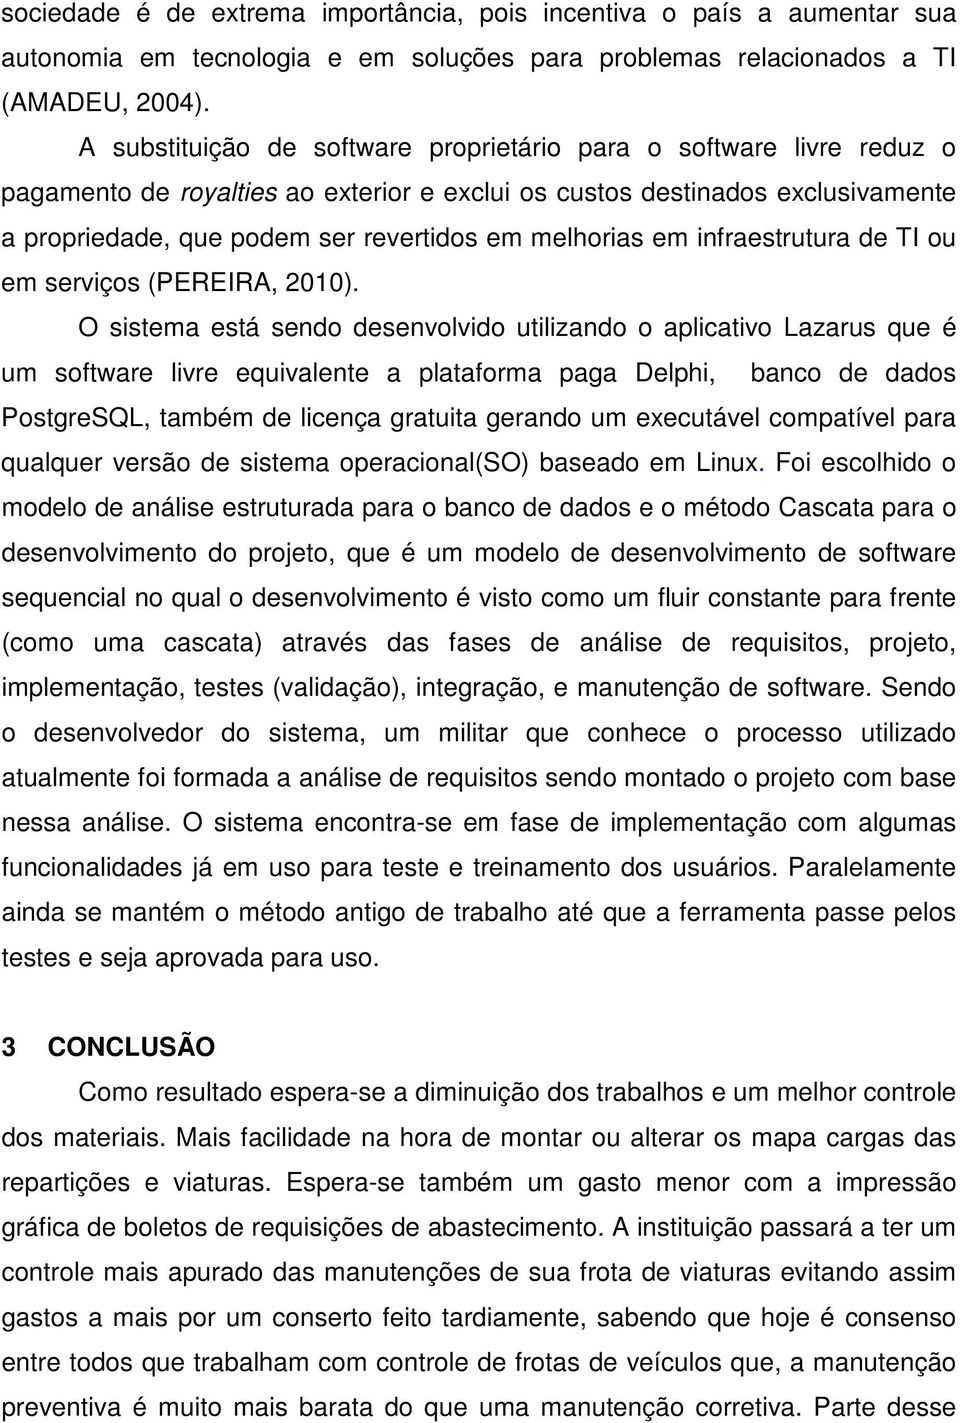 melhorias em infraestrutura de TI ou em serviços (PEREIRA, 2010).